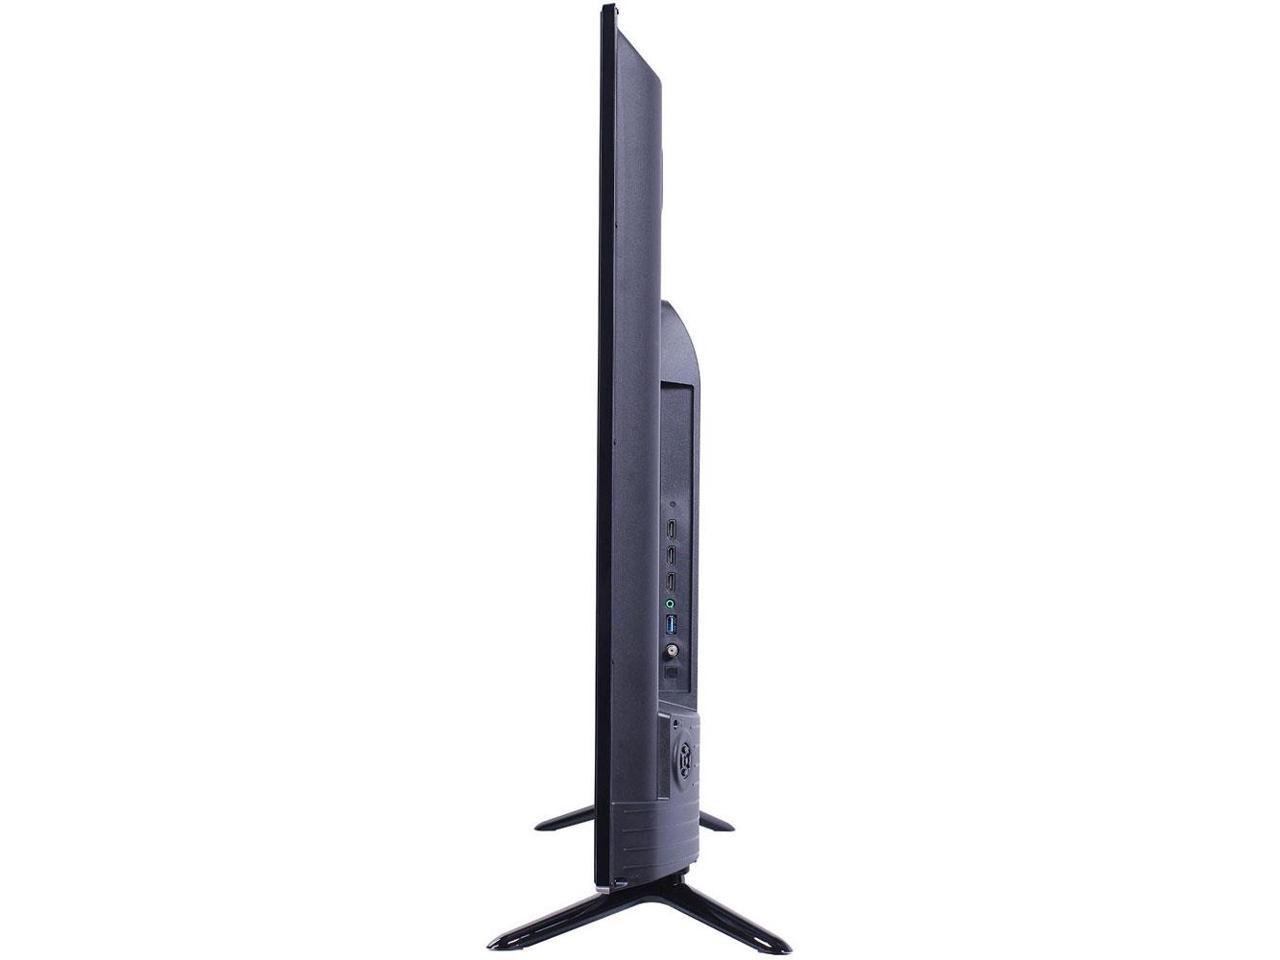 TCL 40" 1080p 120Hz LED-LCD HDTV 40FS3850 - Newegg.com